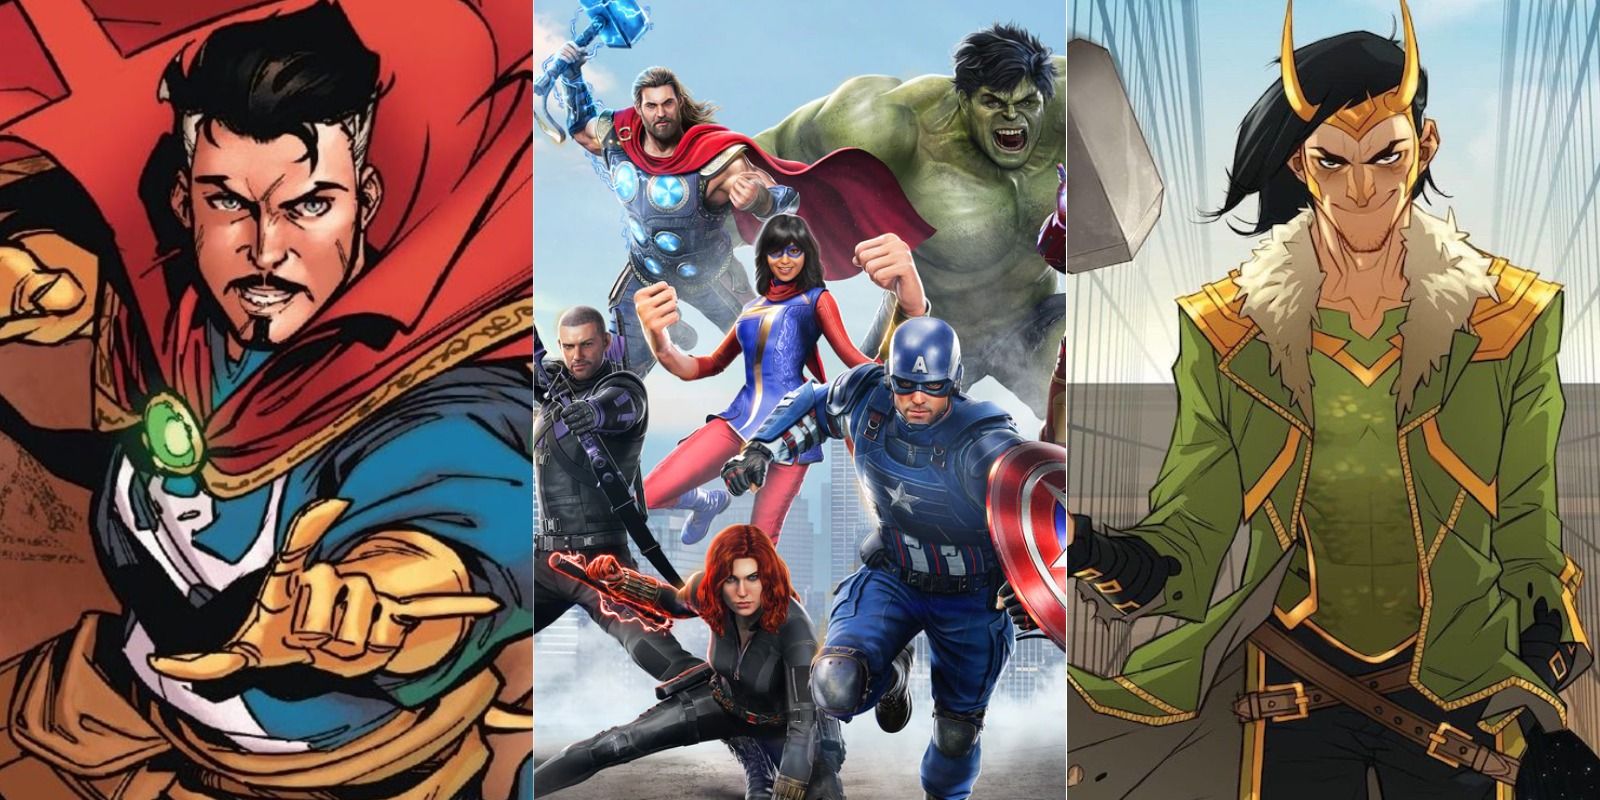 Marvel's Avengers - split image of Doctor Strange, a group of Avengers, and Loki